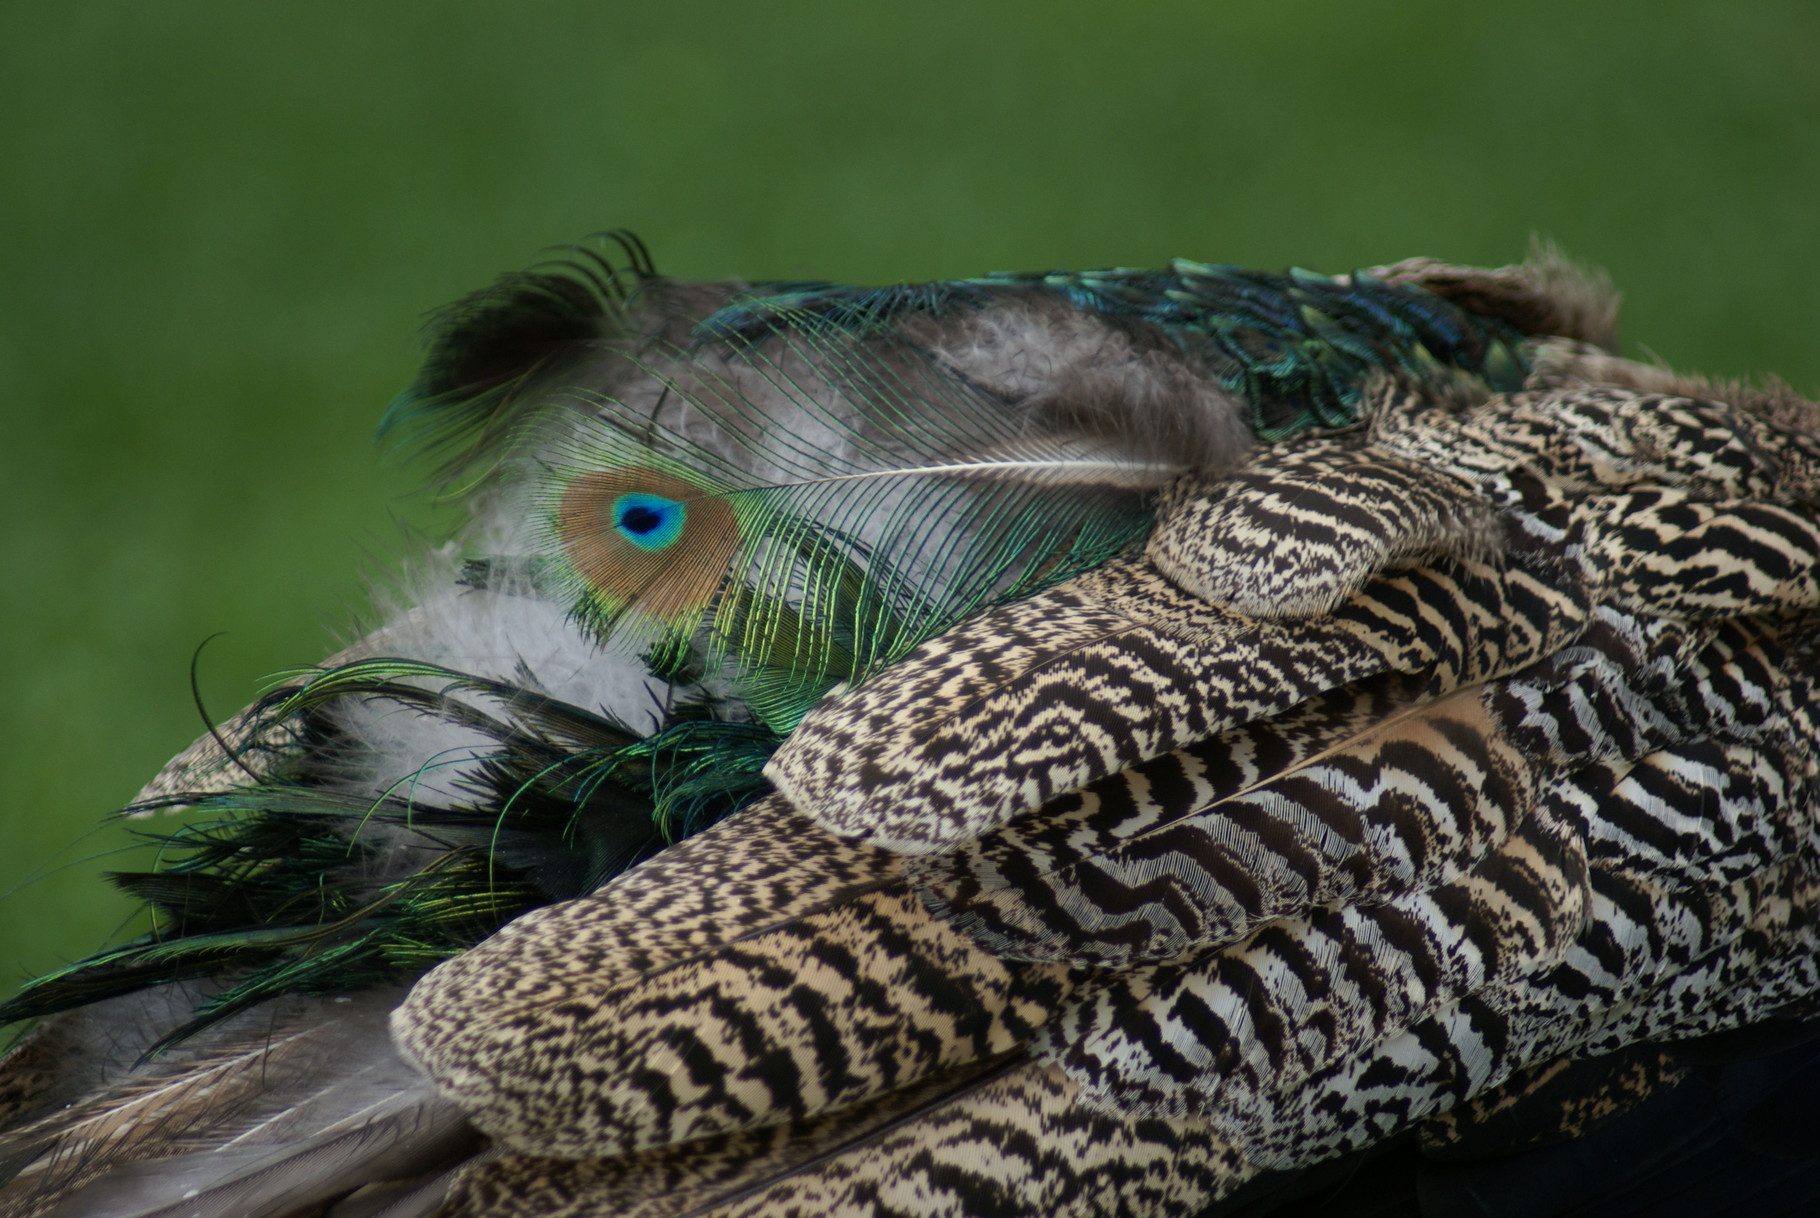 Peacock (Wilhelma Stuttgart)